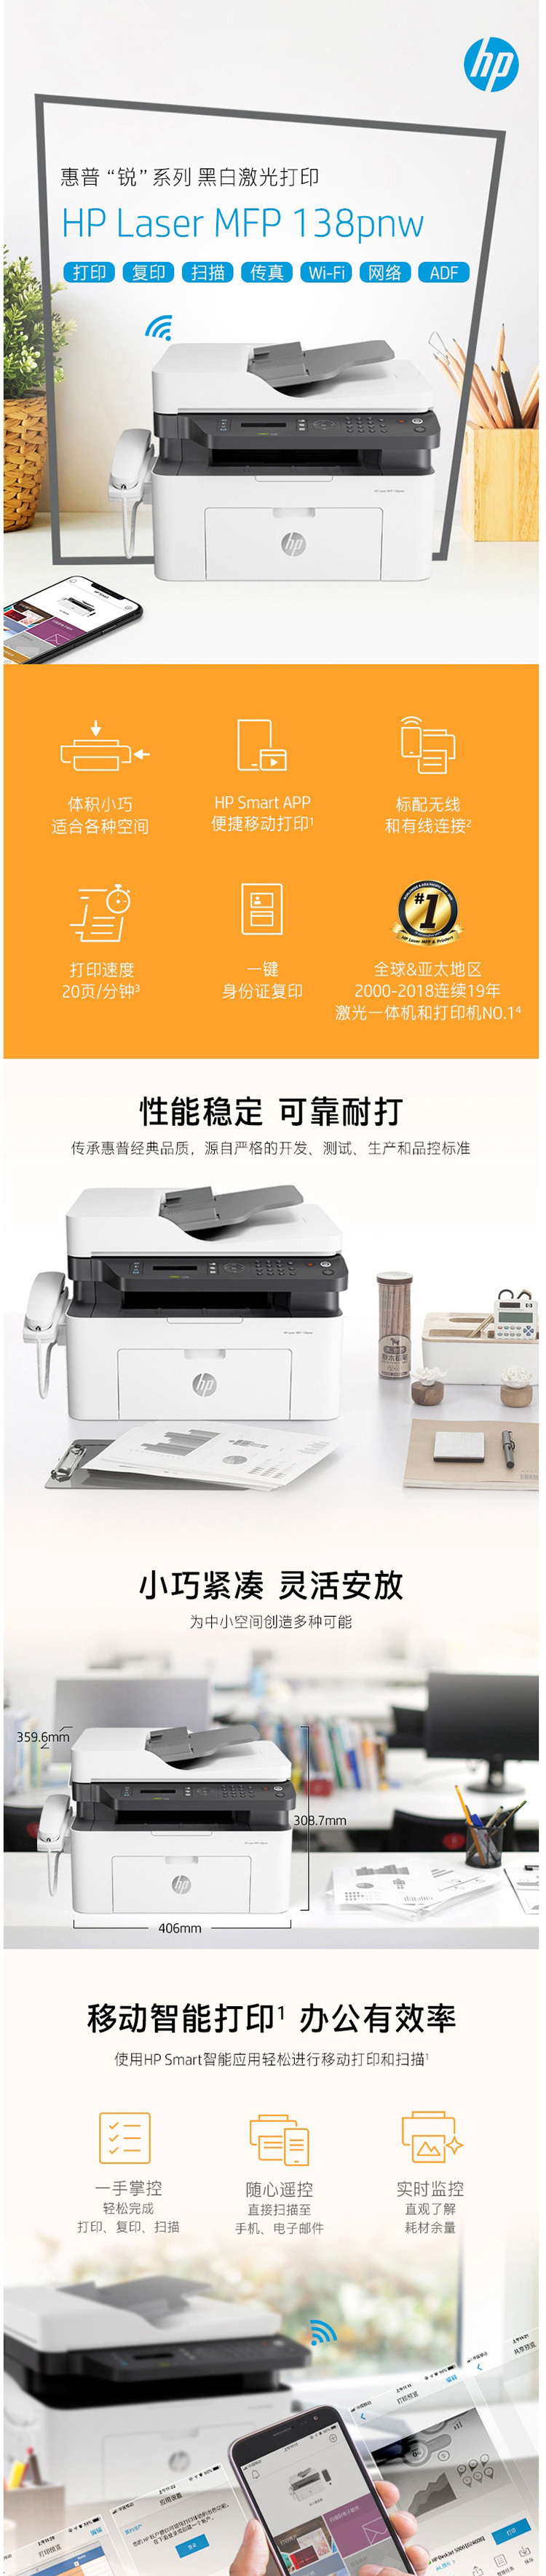 惠普/HP 138pnw 锐系列新品激光打印机 多功能一体机四合一打印复印扫描传真 无线版